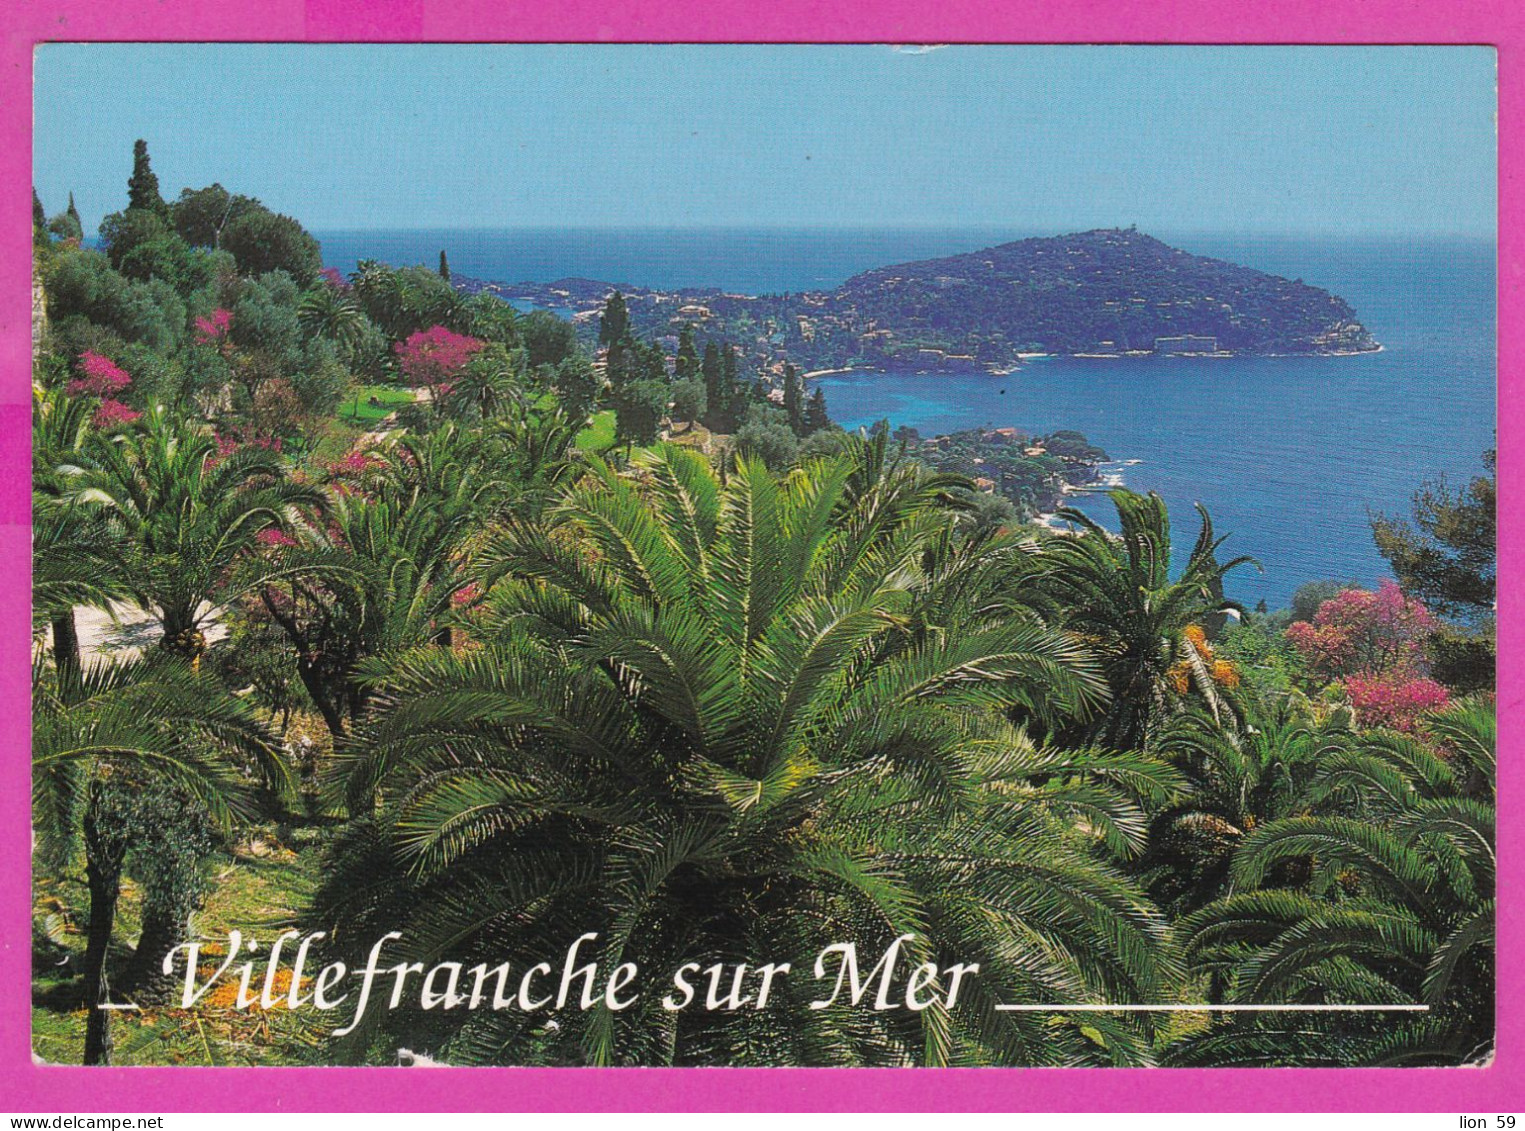 294143 / France - Villefranche Sur Mer PC 1999 USED  Marianne De Luquet Sans Valeur Faciale Autoadhésif Bords Flamme SOS - Briefe U. Dokumente